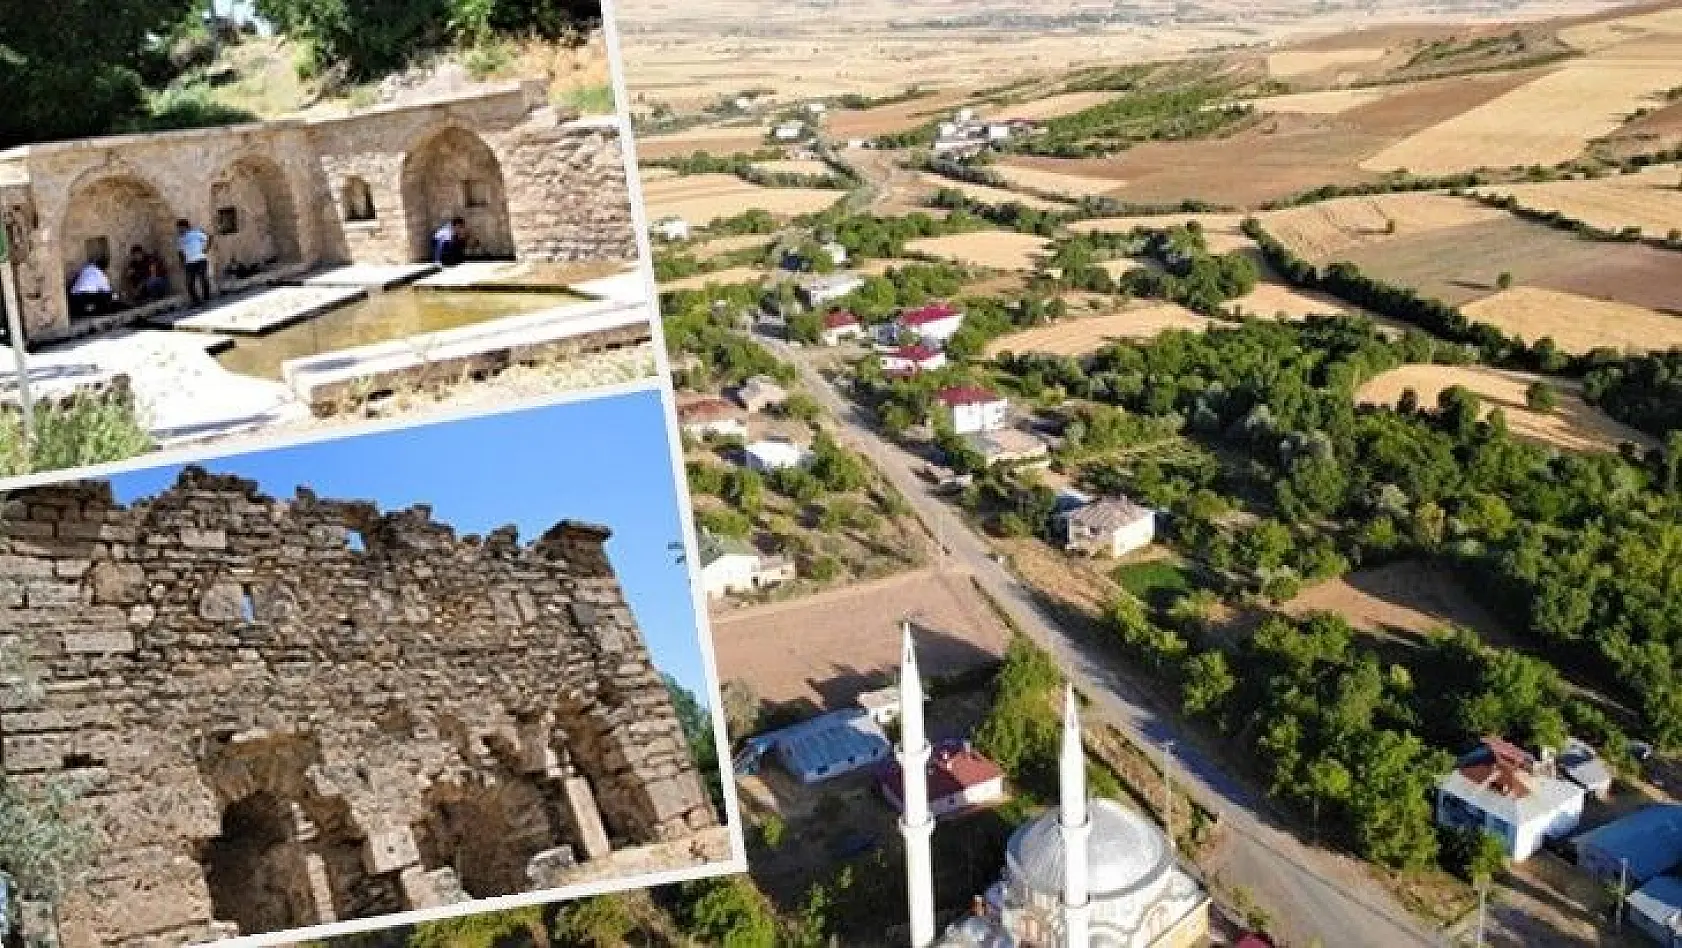 6 tescilli tarihi yapının bulunduğu köy, dünyanın dört bir yanından turist ağırlıyor